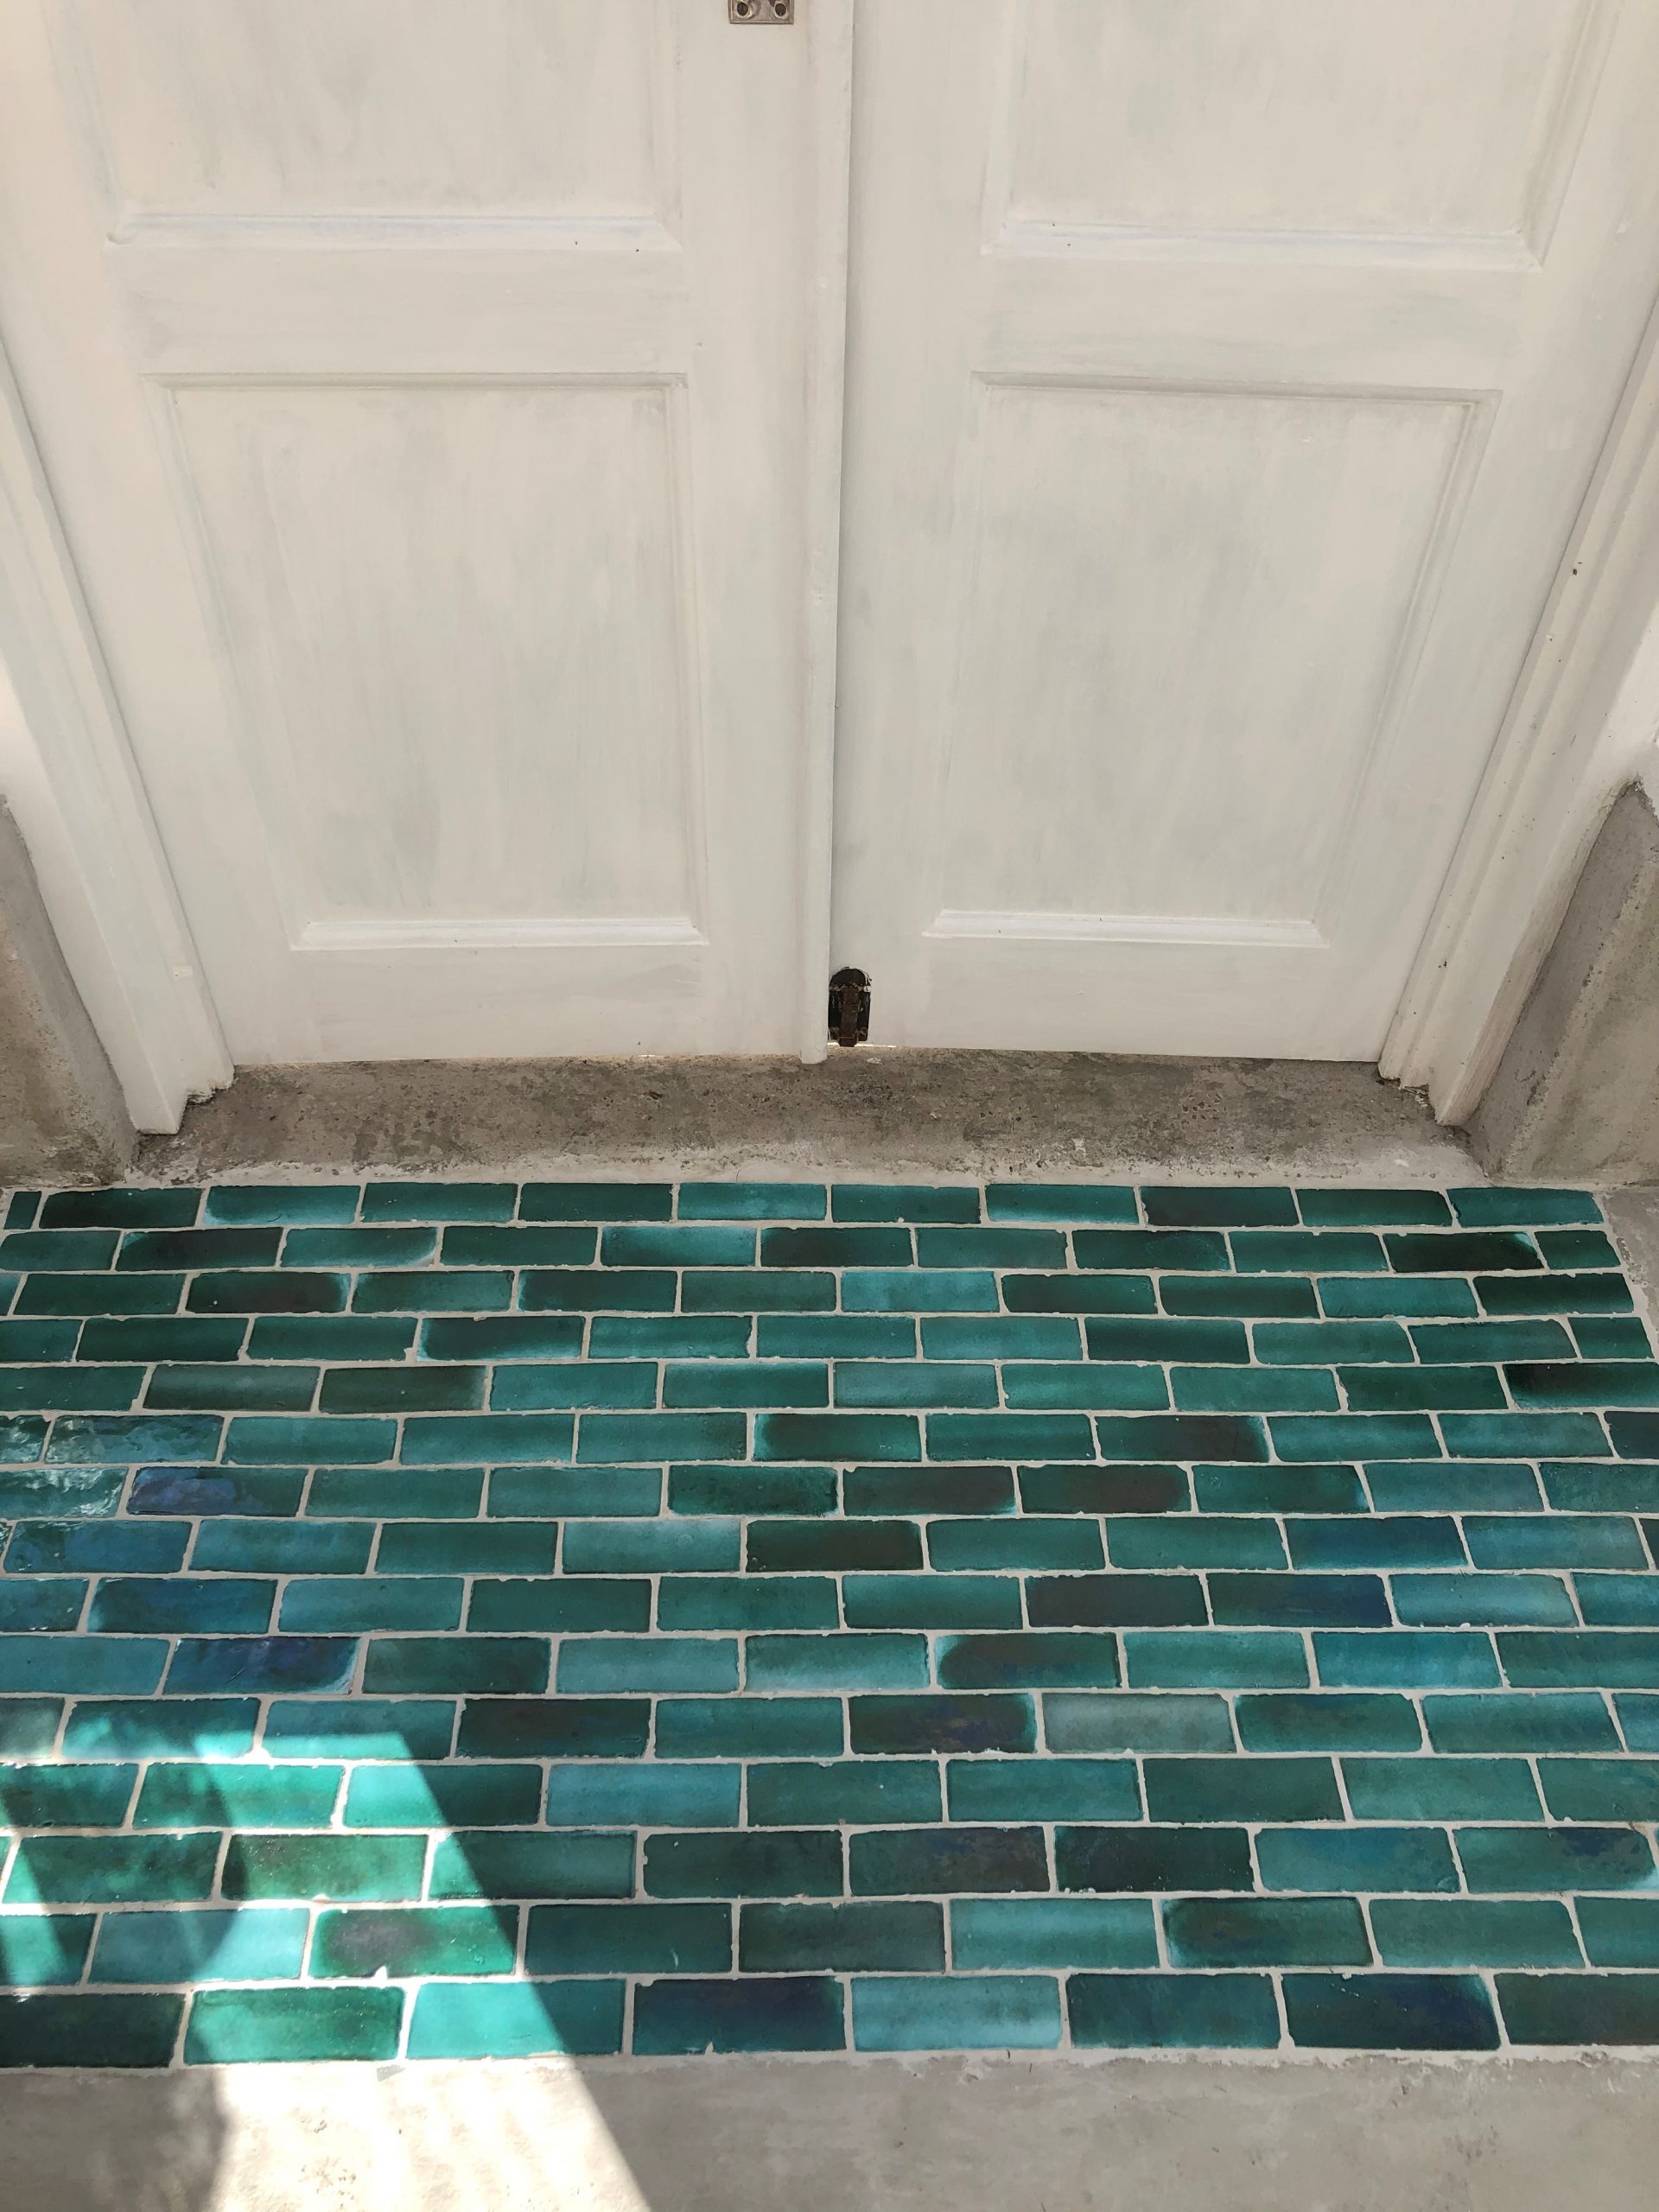 Bejmat Wall Floor Tiles Emerald Green, Turquoise Floor Tile